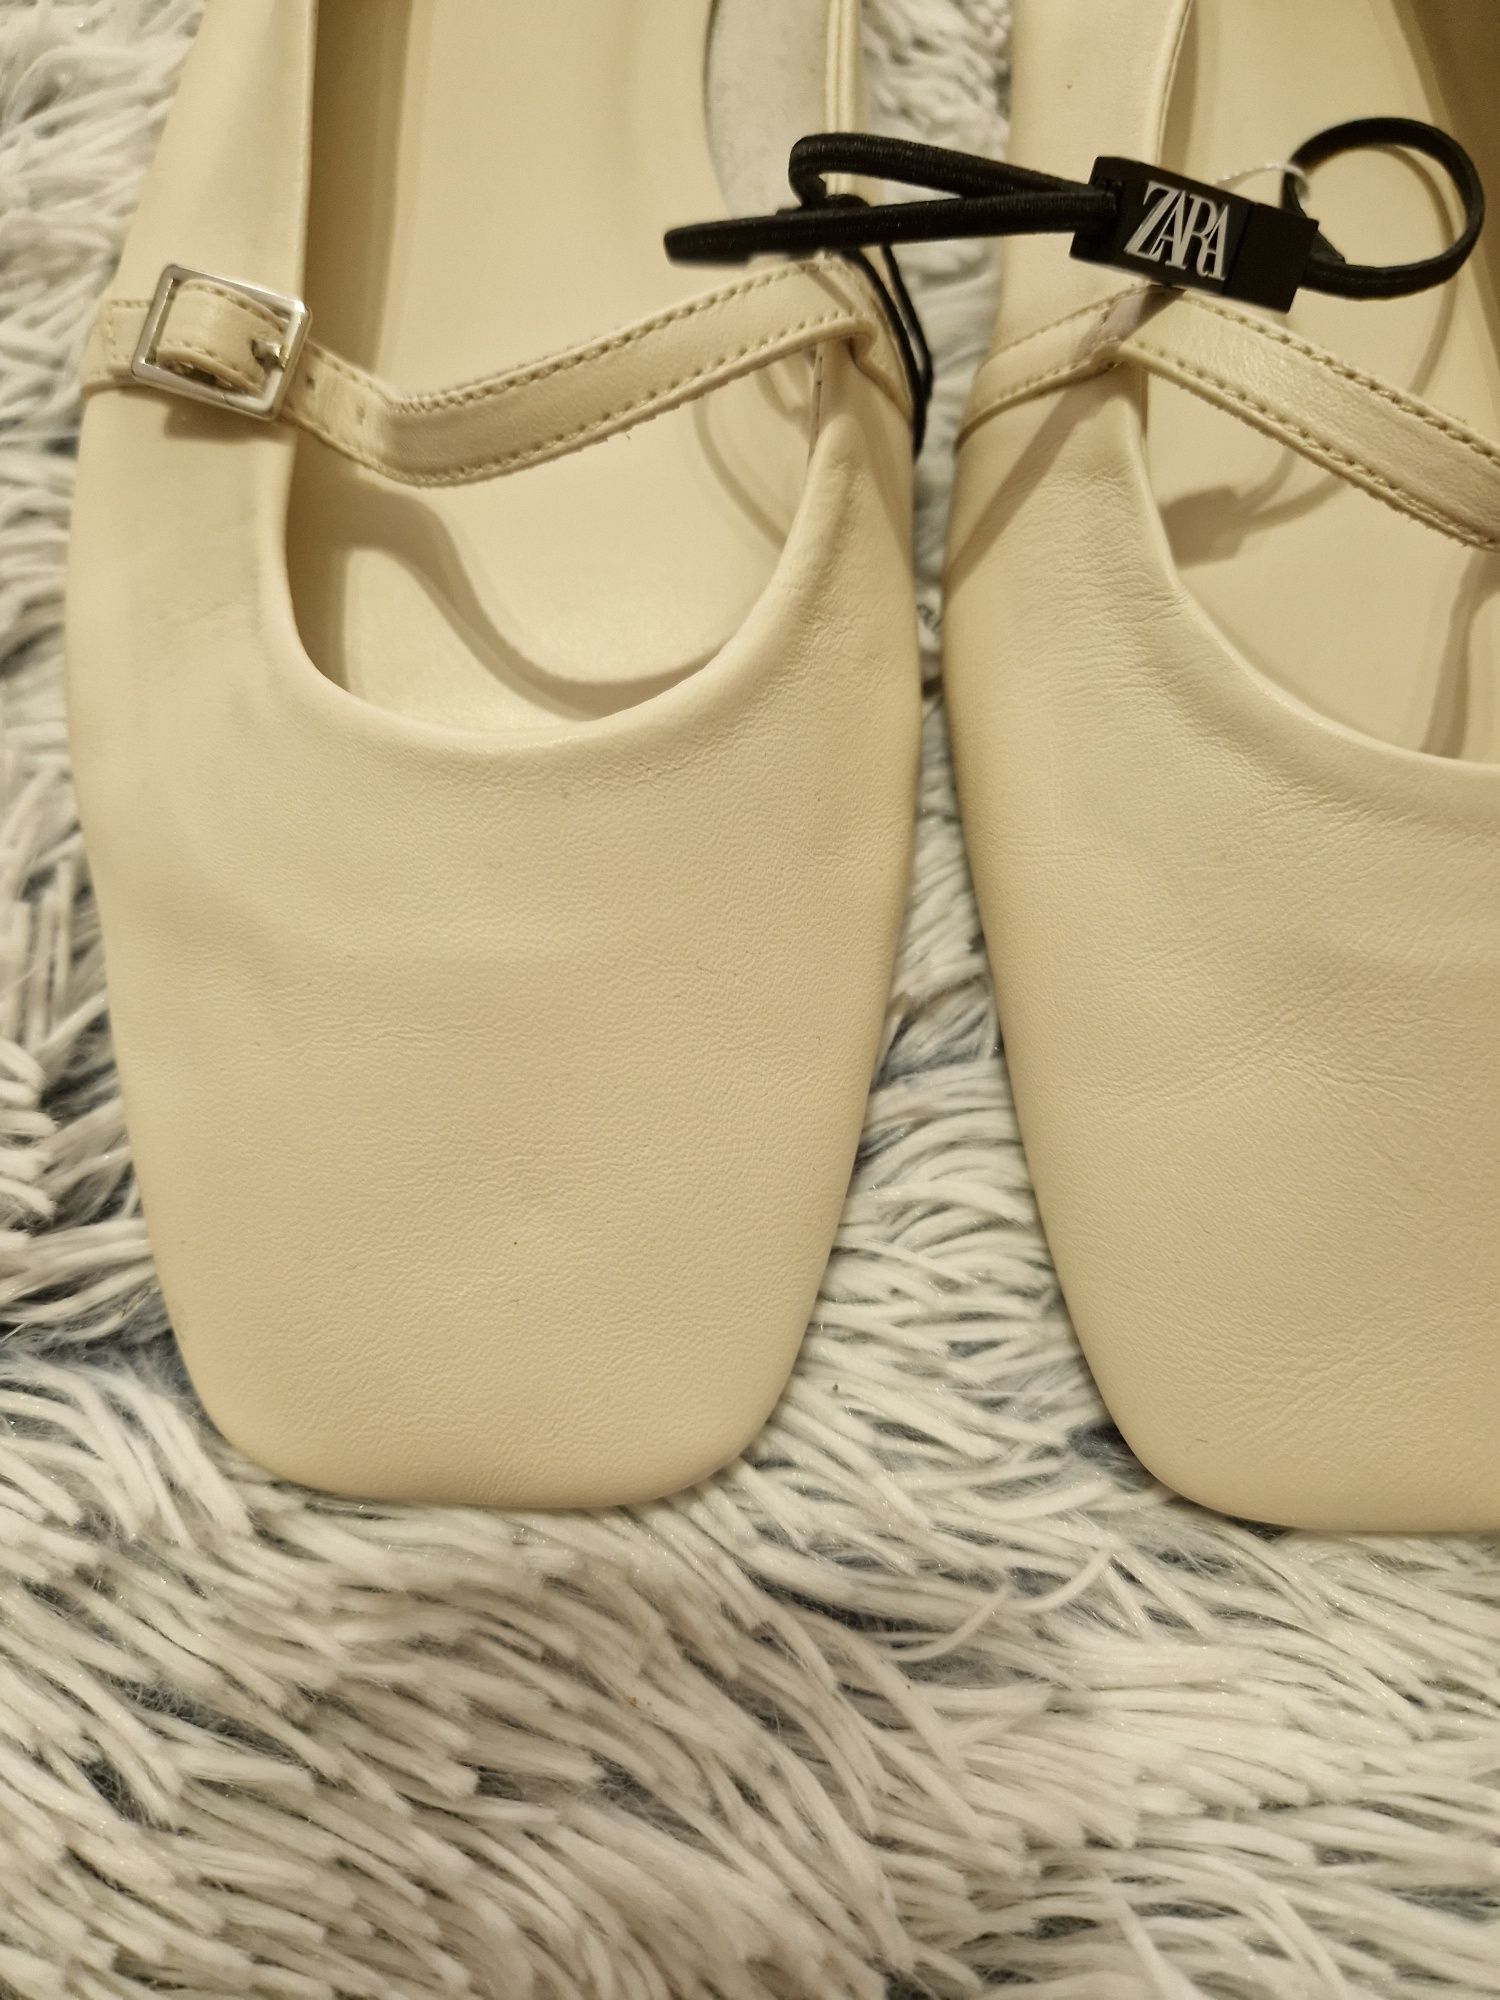 Туфлі балетки квадратні натуральна шкіра Zara 39